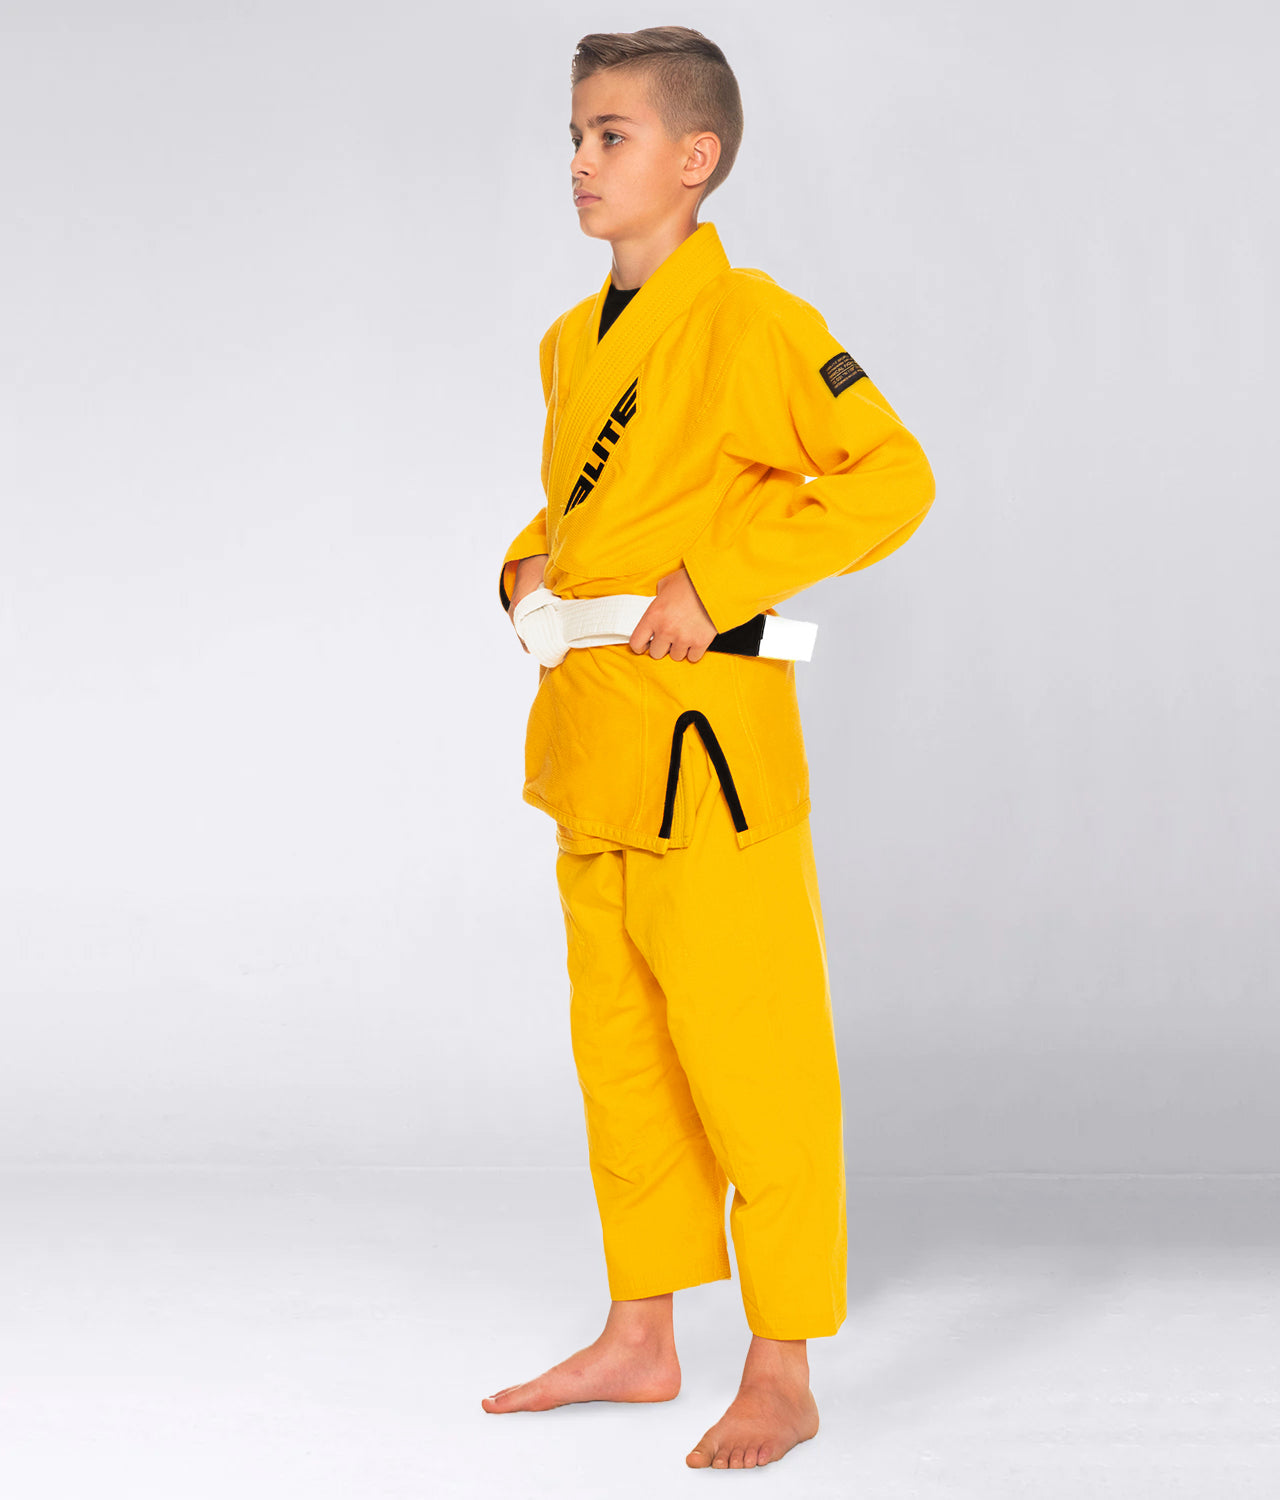 Elite Sports Kids' Core Yellow Brazilian Jiu Jitsu BJJ Gi Side View